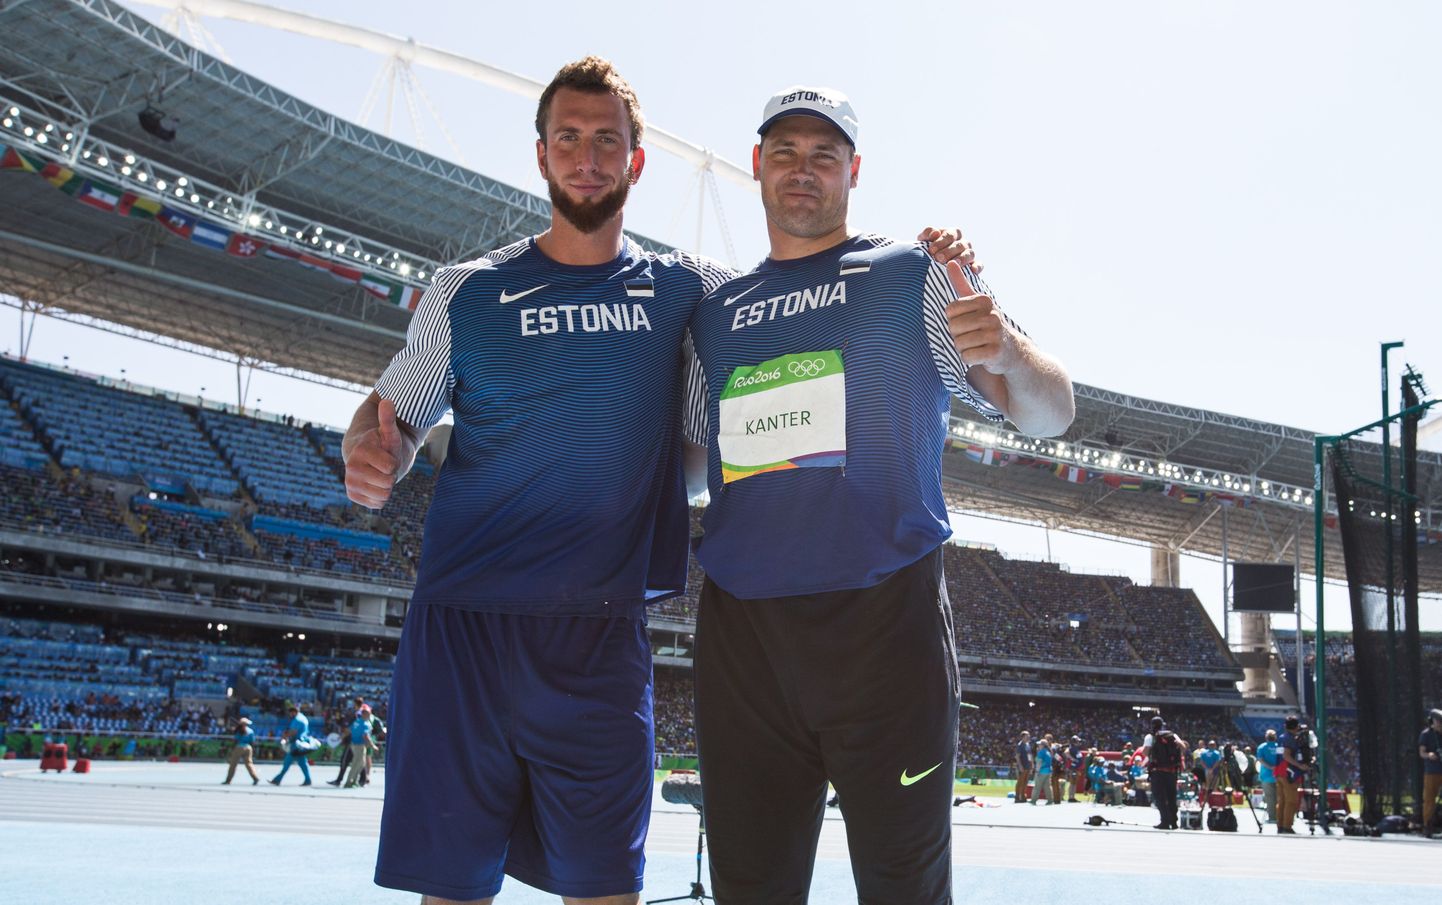 Мартин Куппер (слева) и Герд Кантер на Олимпиаде в Рио.